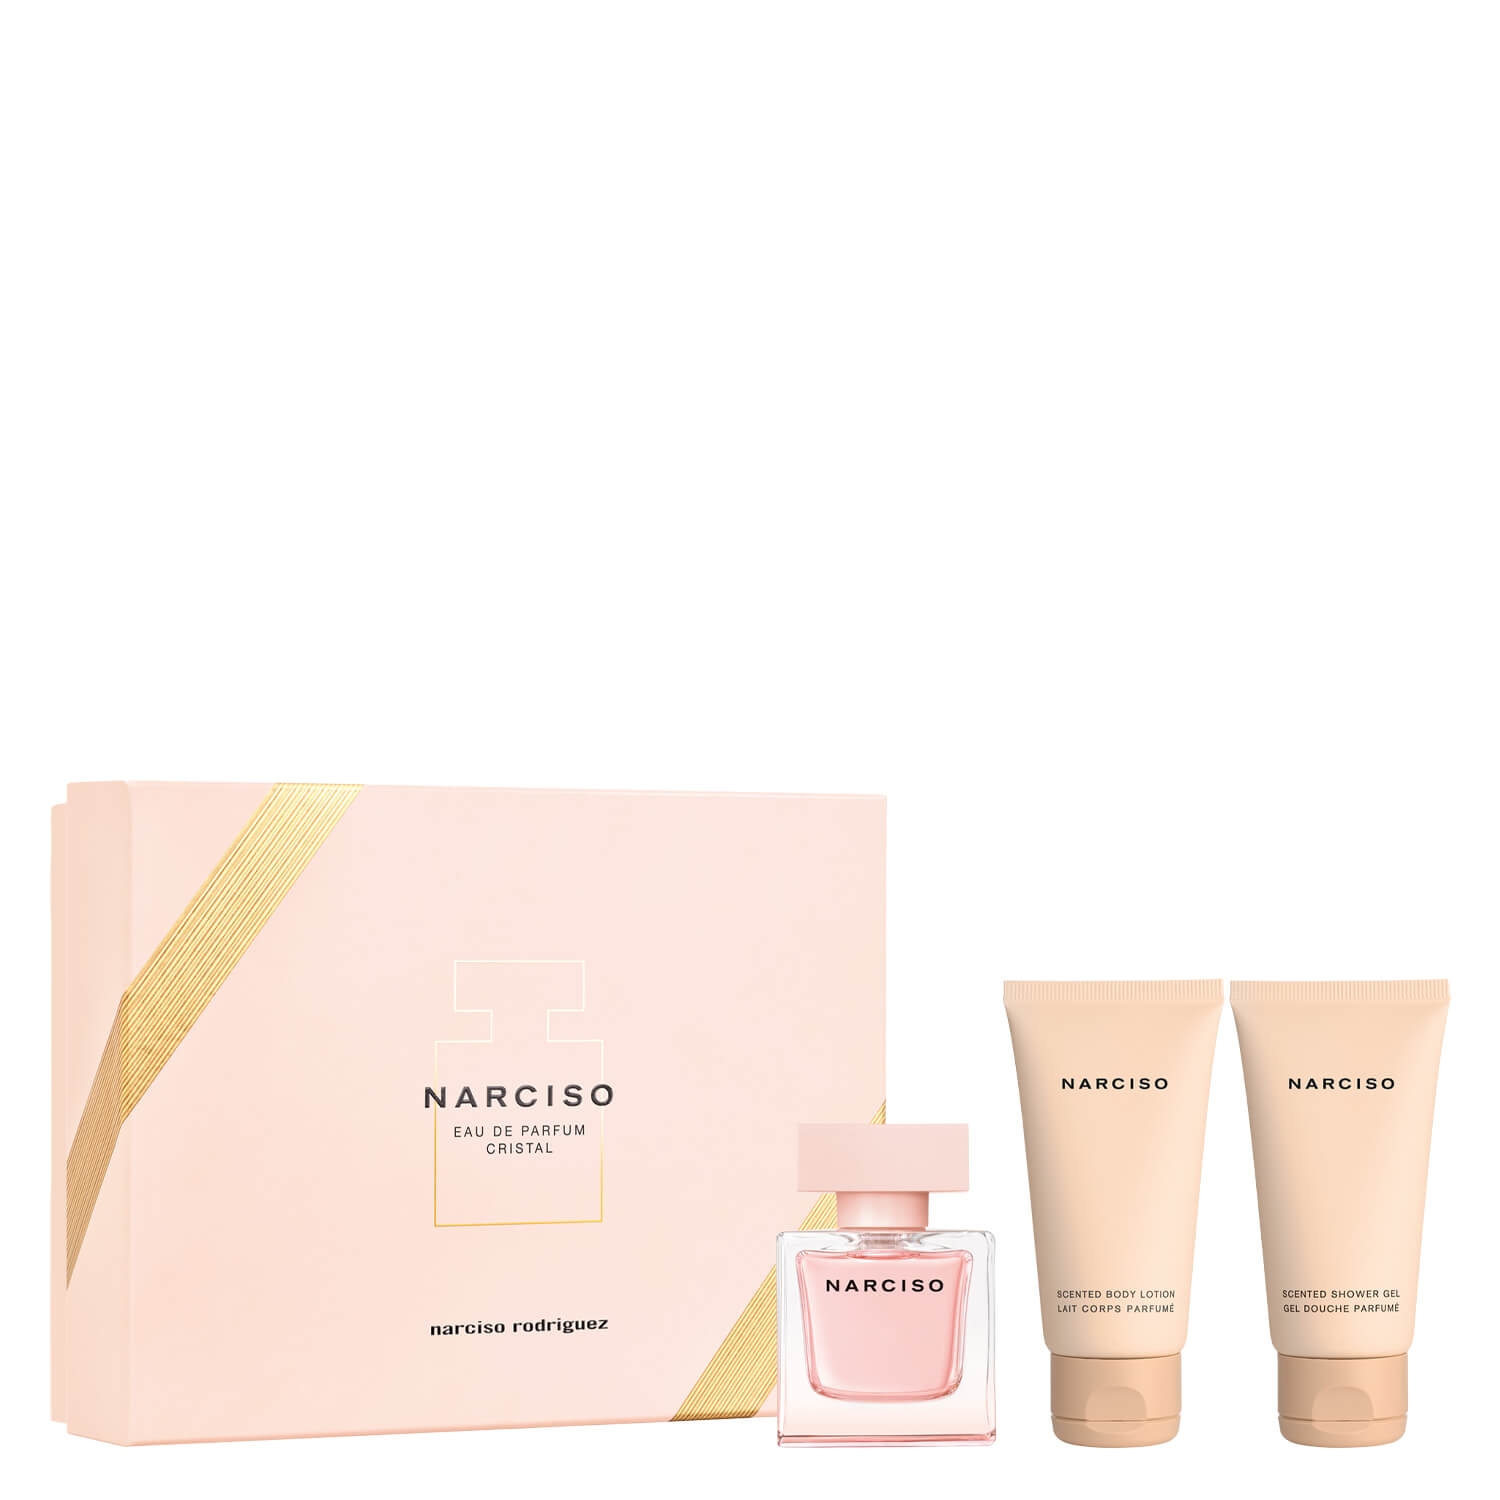 Produktbild von Narciso – Eau de Parfum Cristal Set